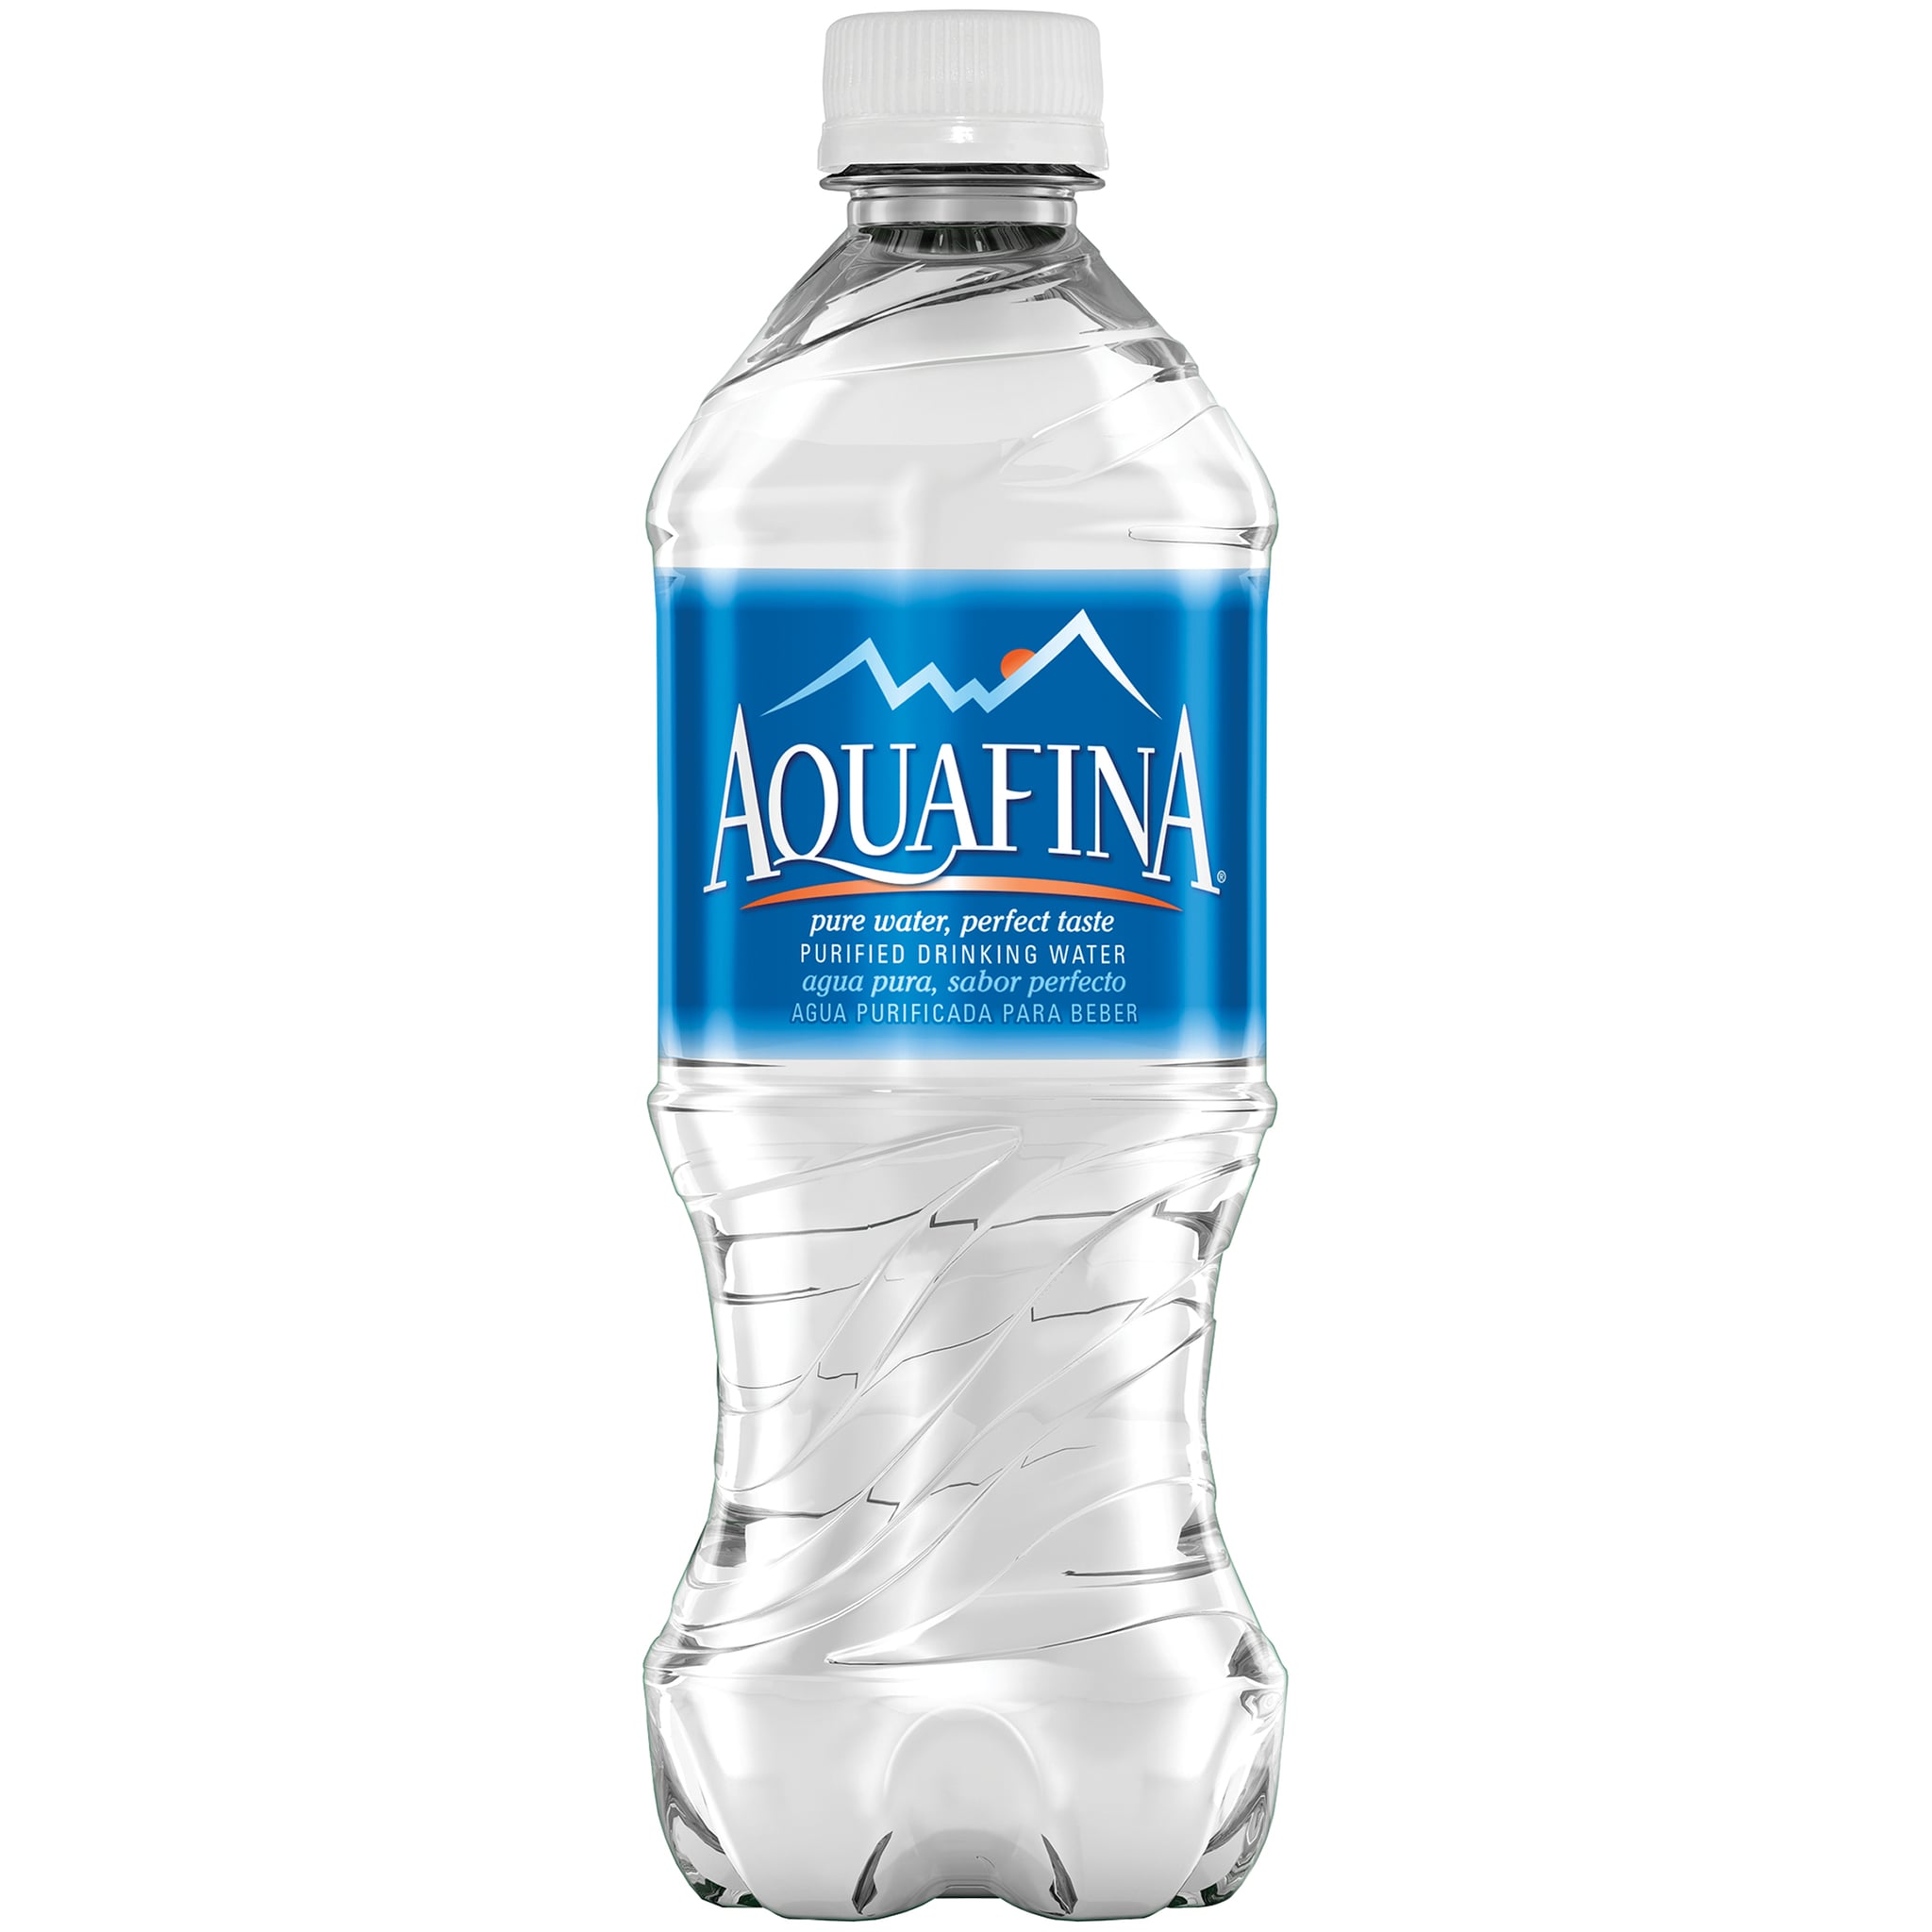 Aquafina Water Bottle Label Best Label Ideas | My XXX Hot Girl